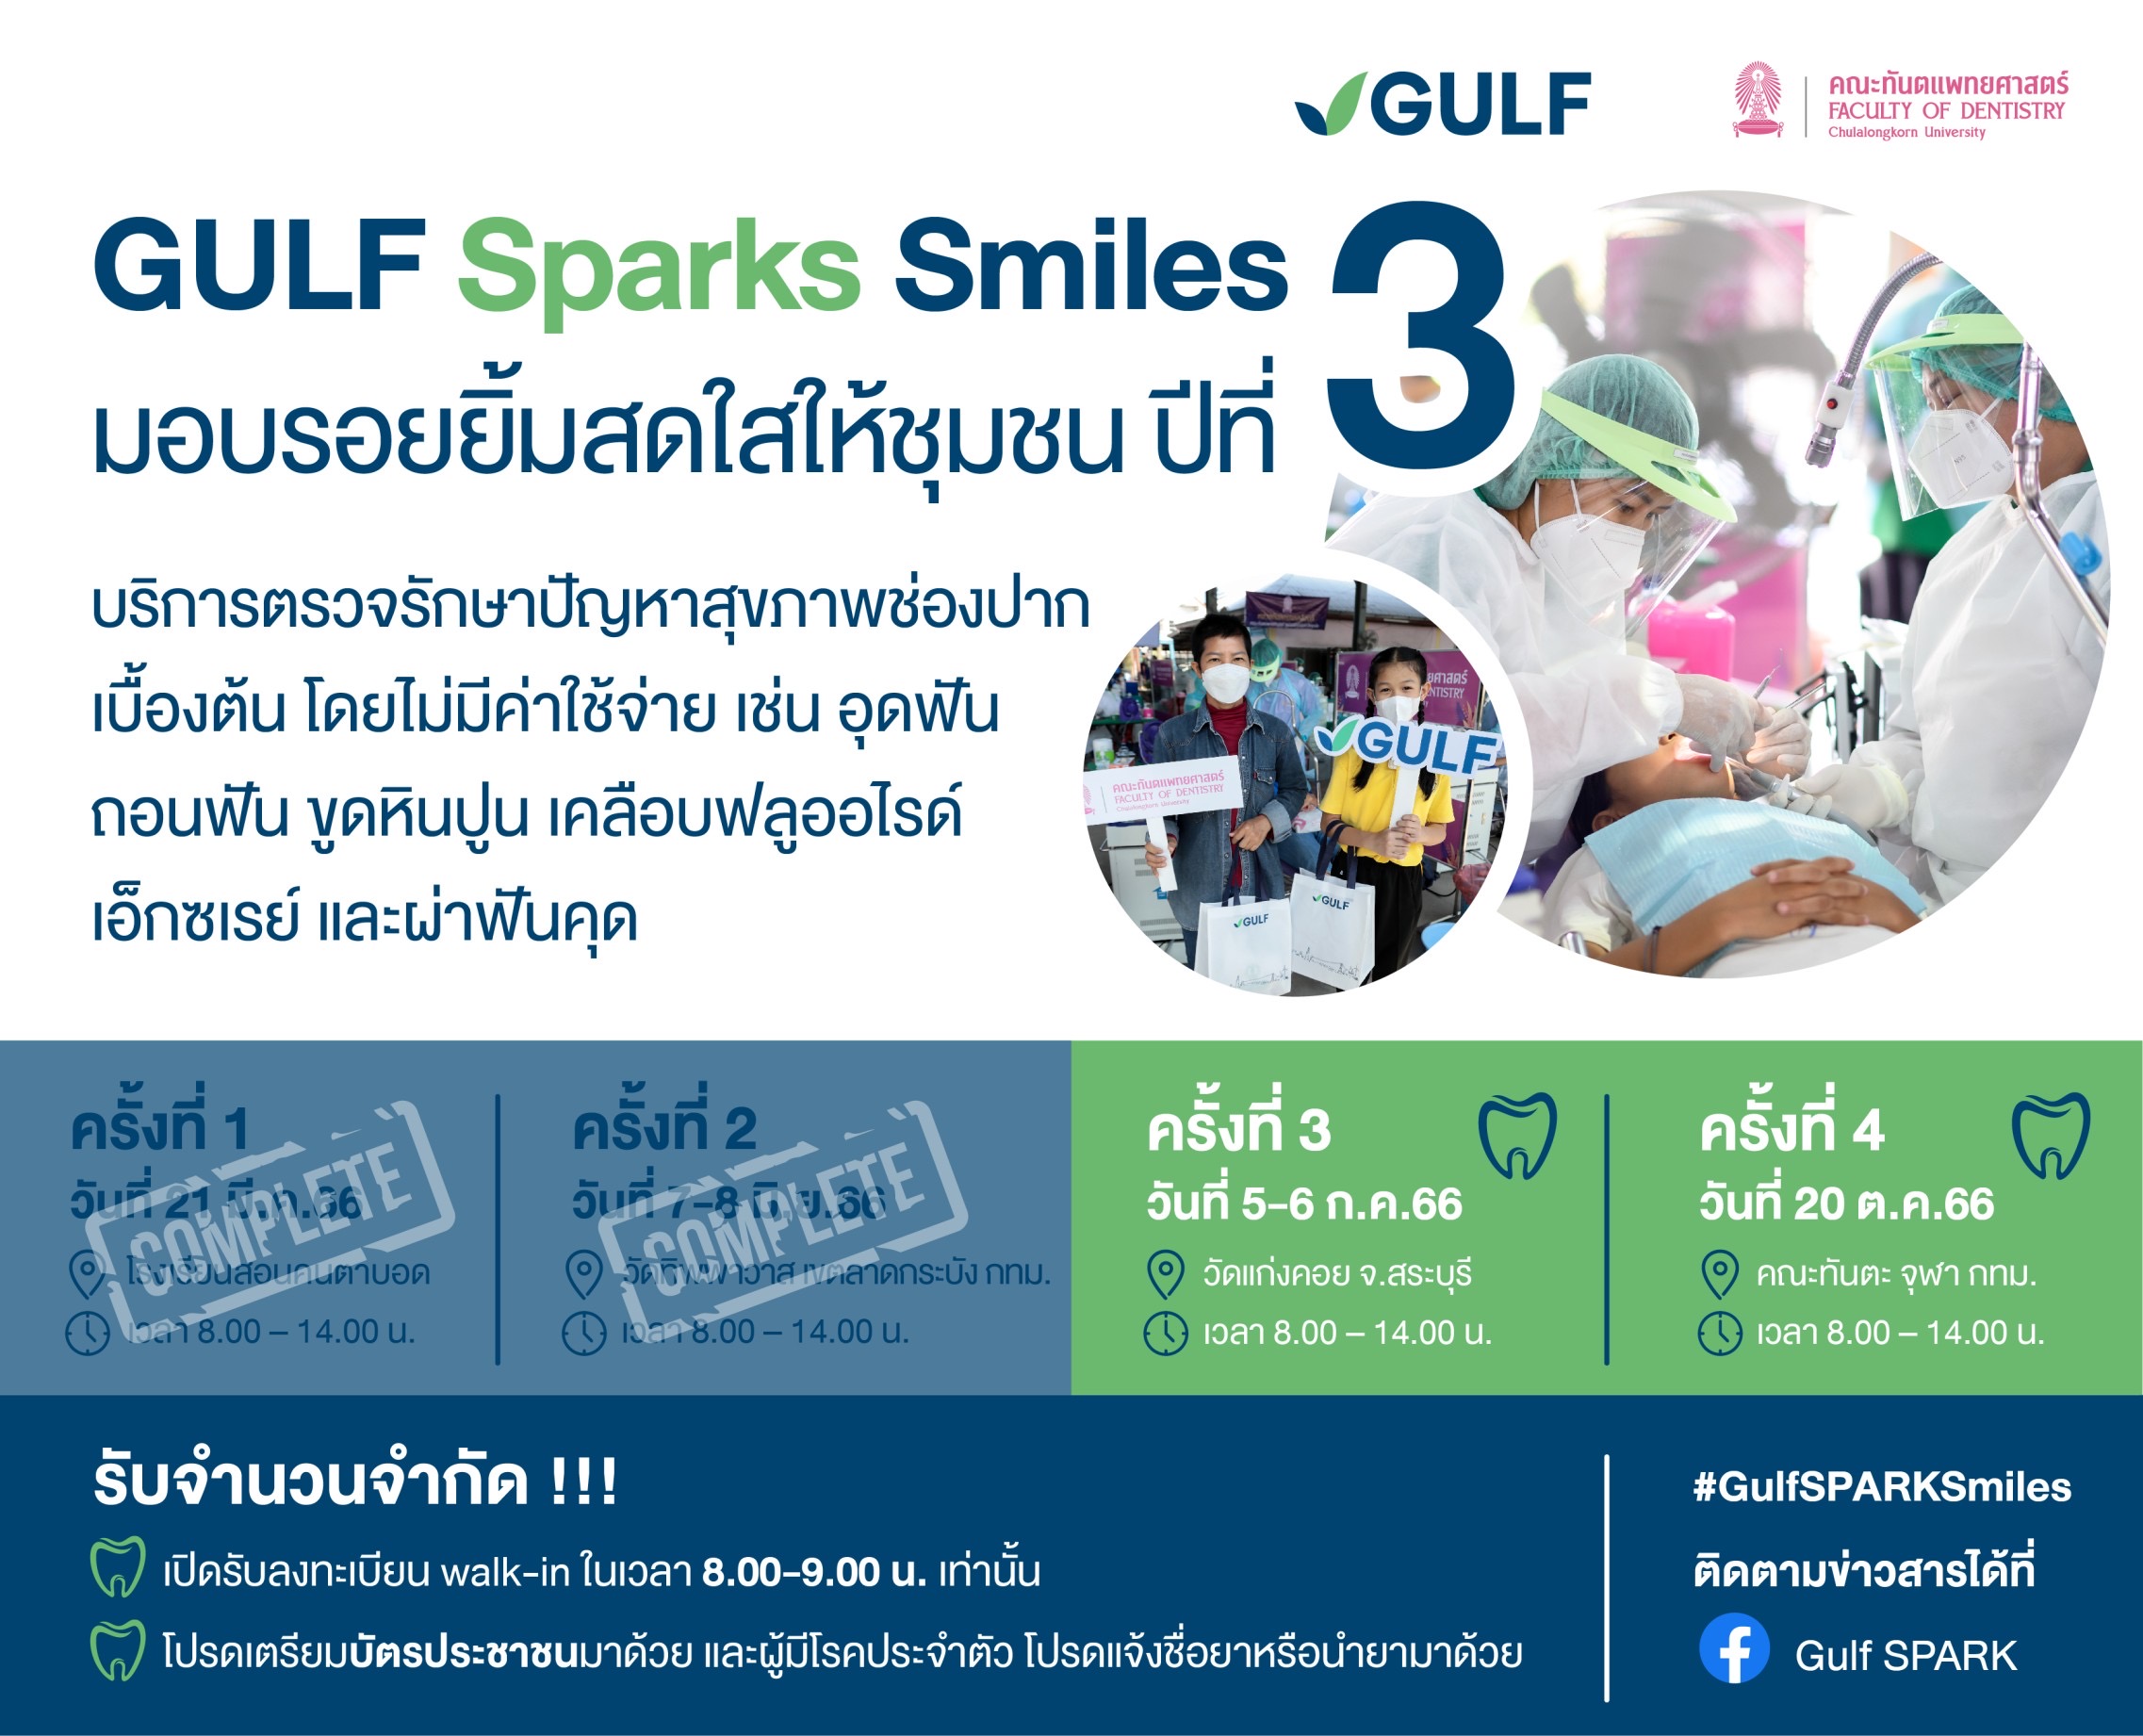 GULF Sparks Smiles มอบรอยยิ้มสดใสให้ชุมชน” ปี 3 หน่วยที่ 3  เตรียมพร้อมลงพื้นที่ อ.แก่งคอย จ.สระบุรี 5-6 ก.ค. นี้